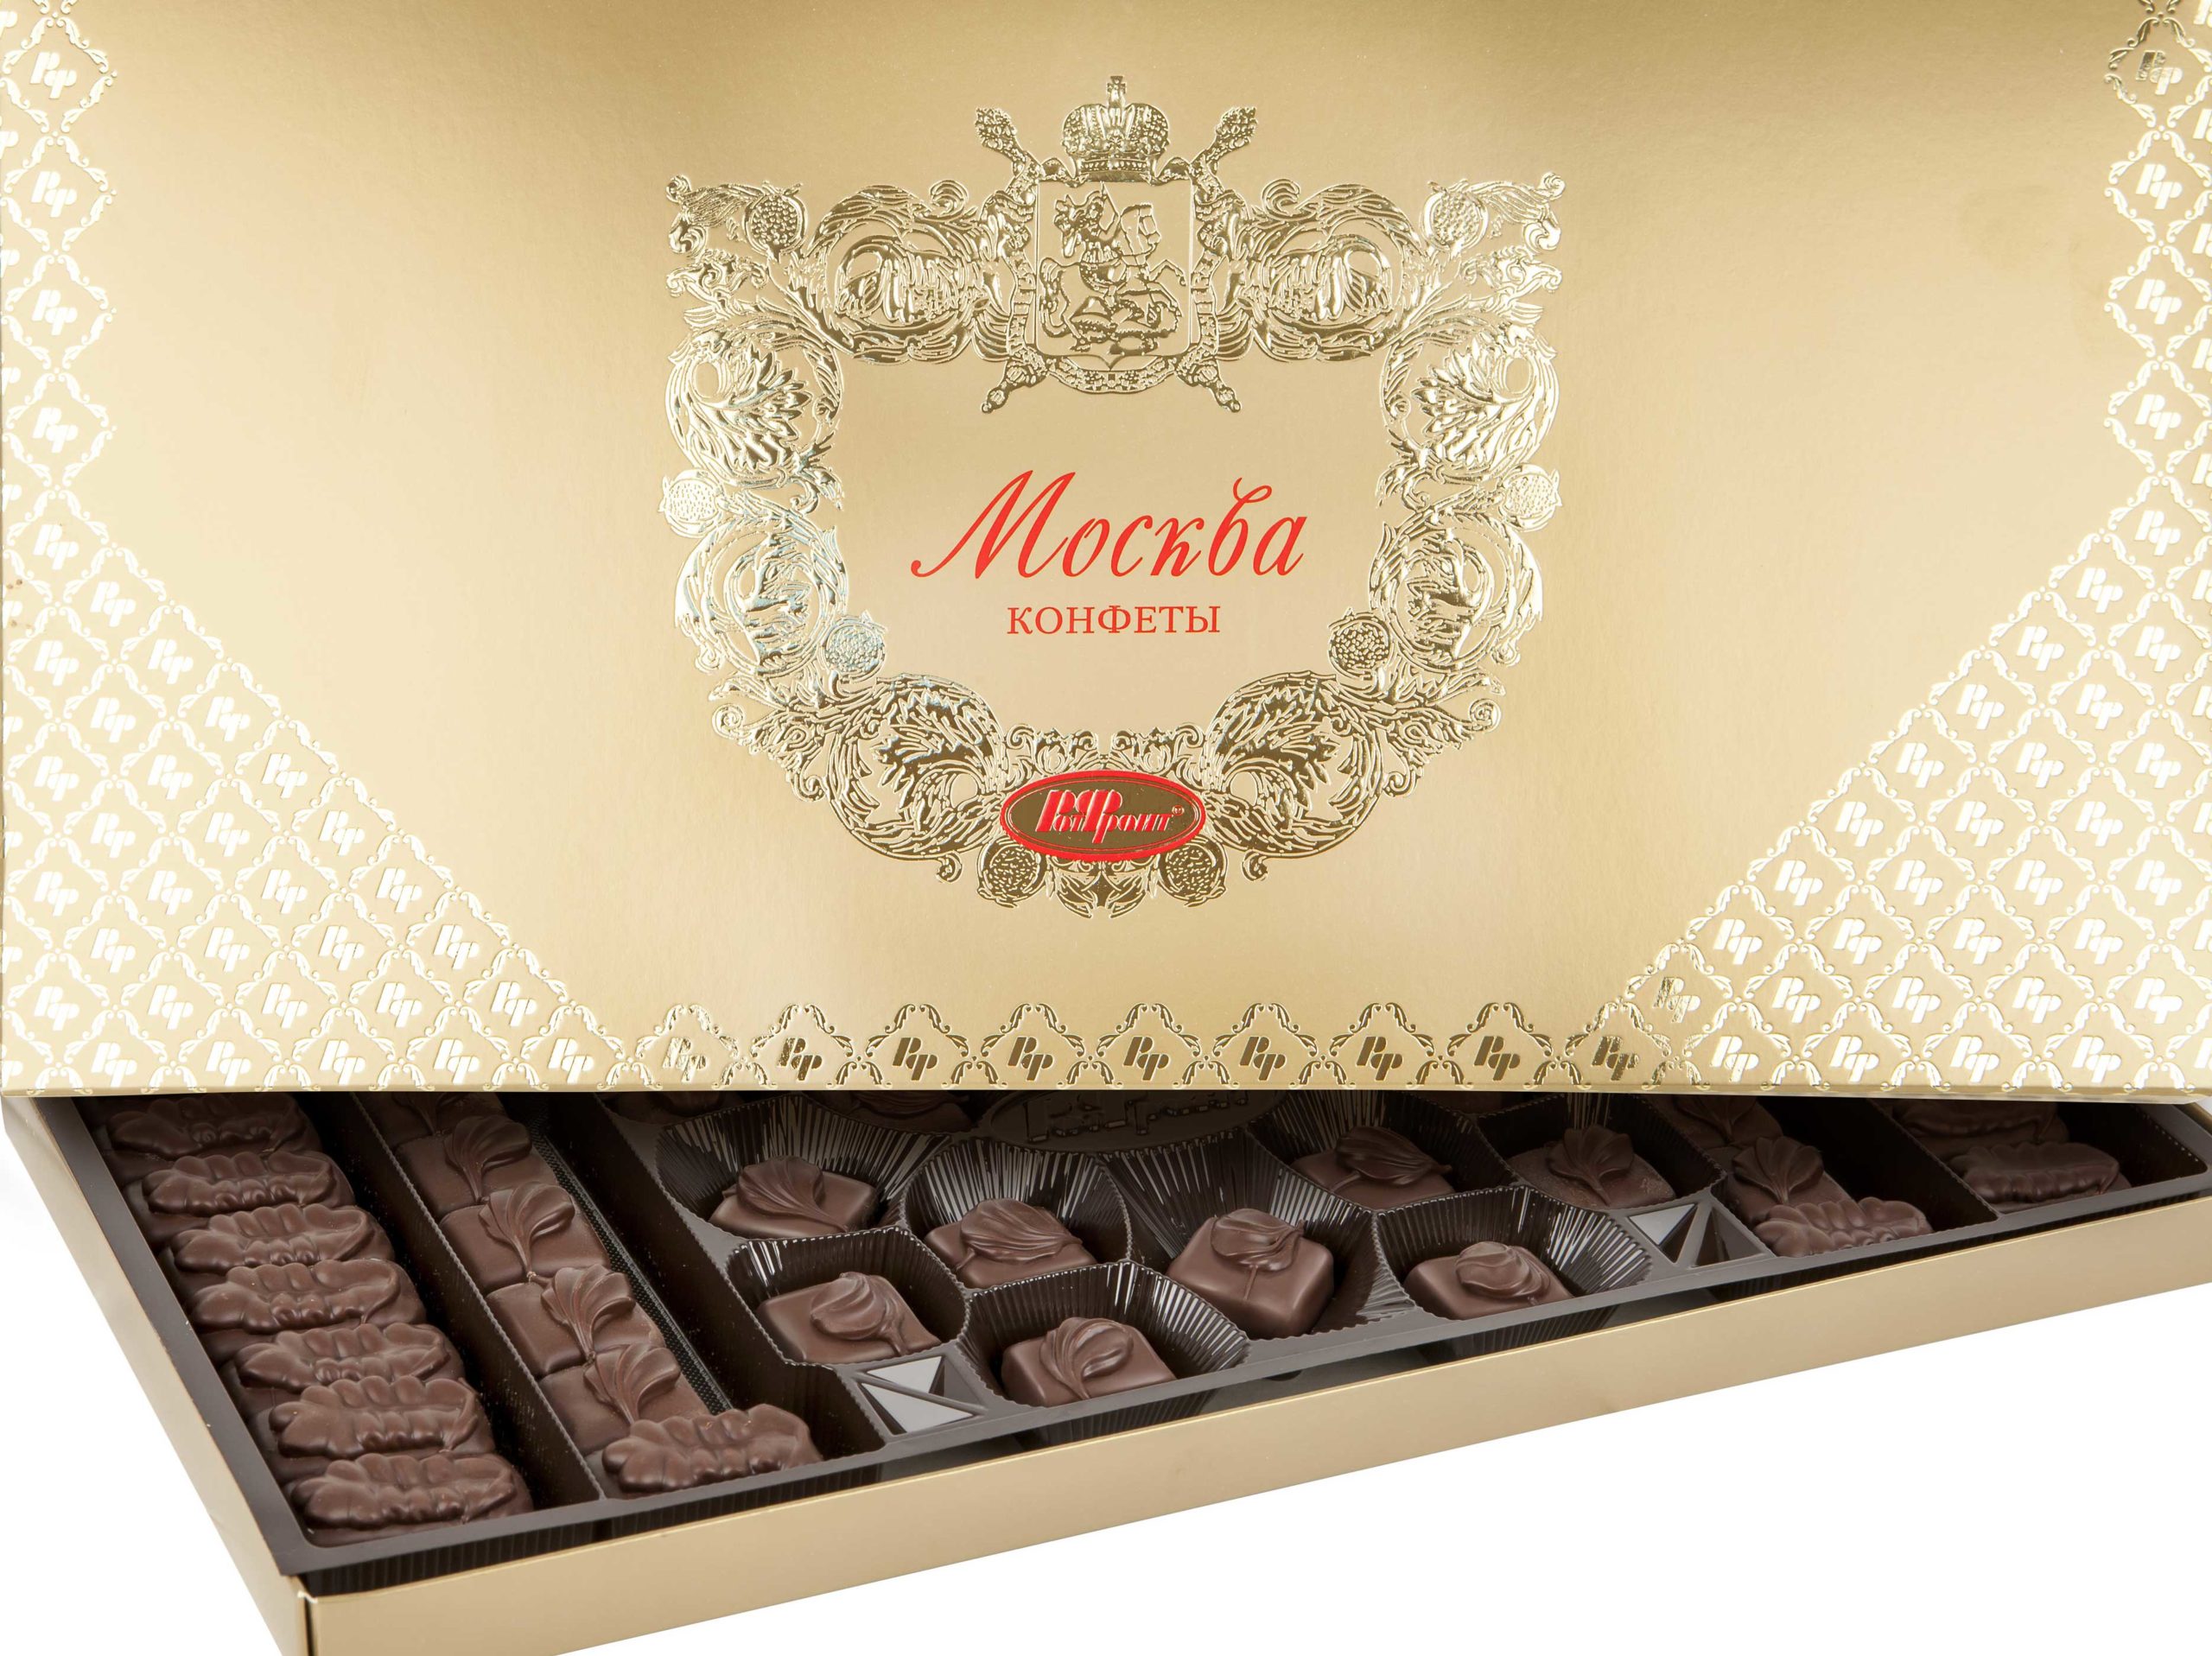 russia esporta cioccolato